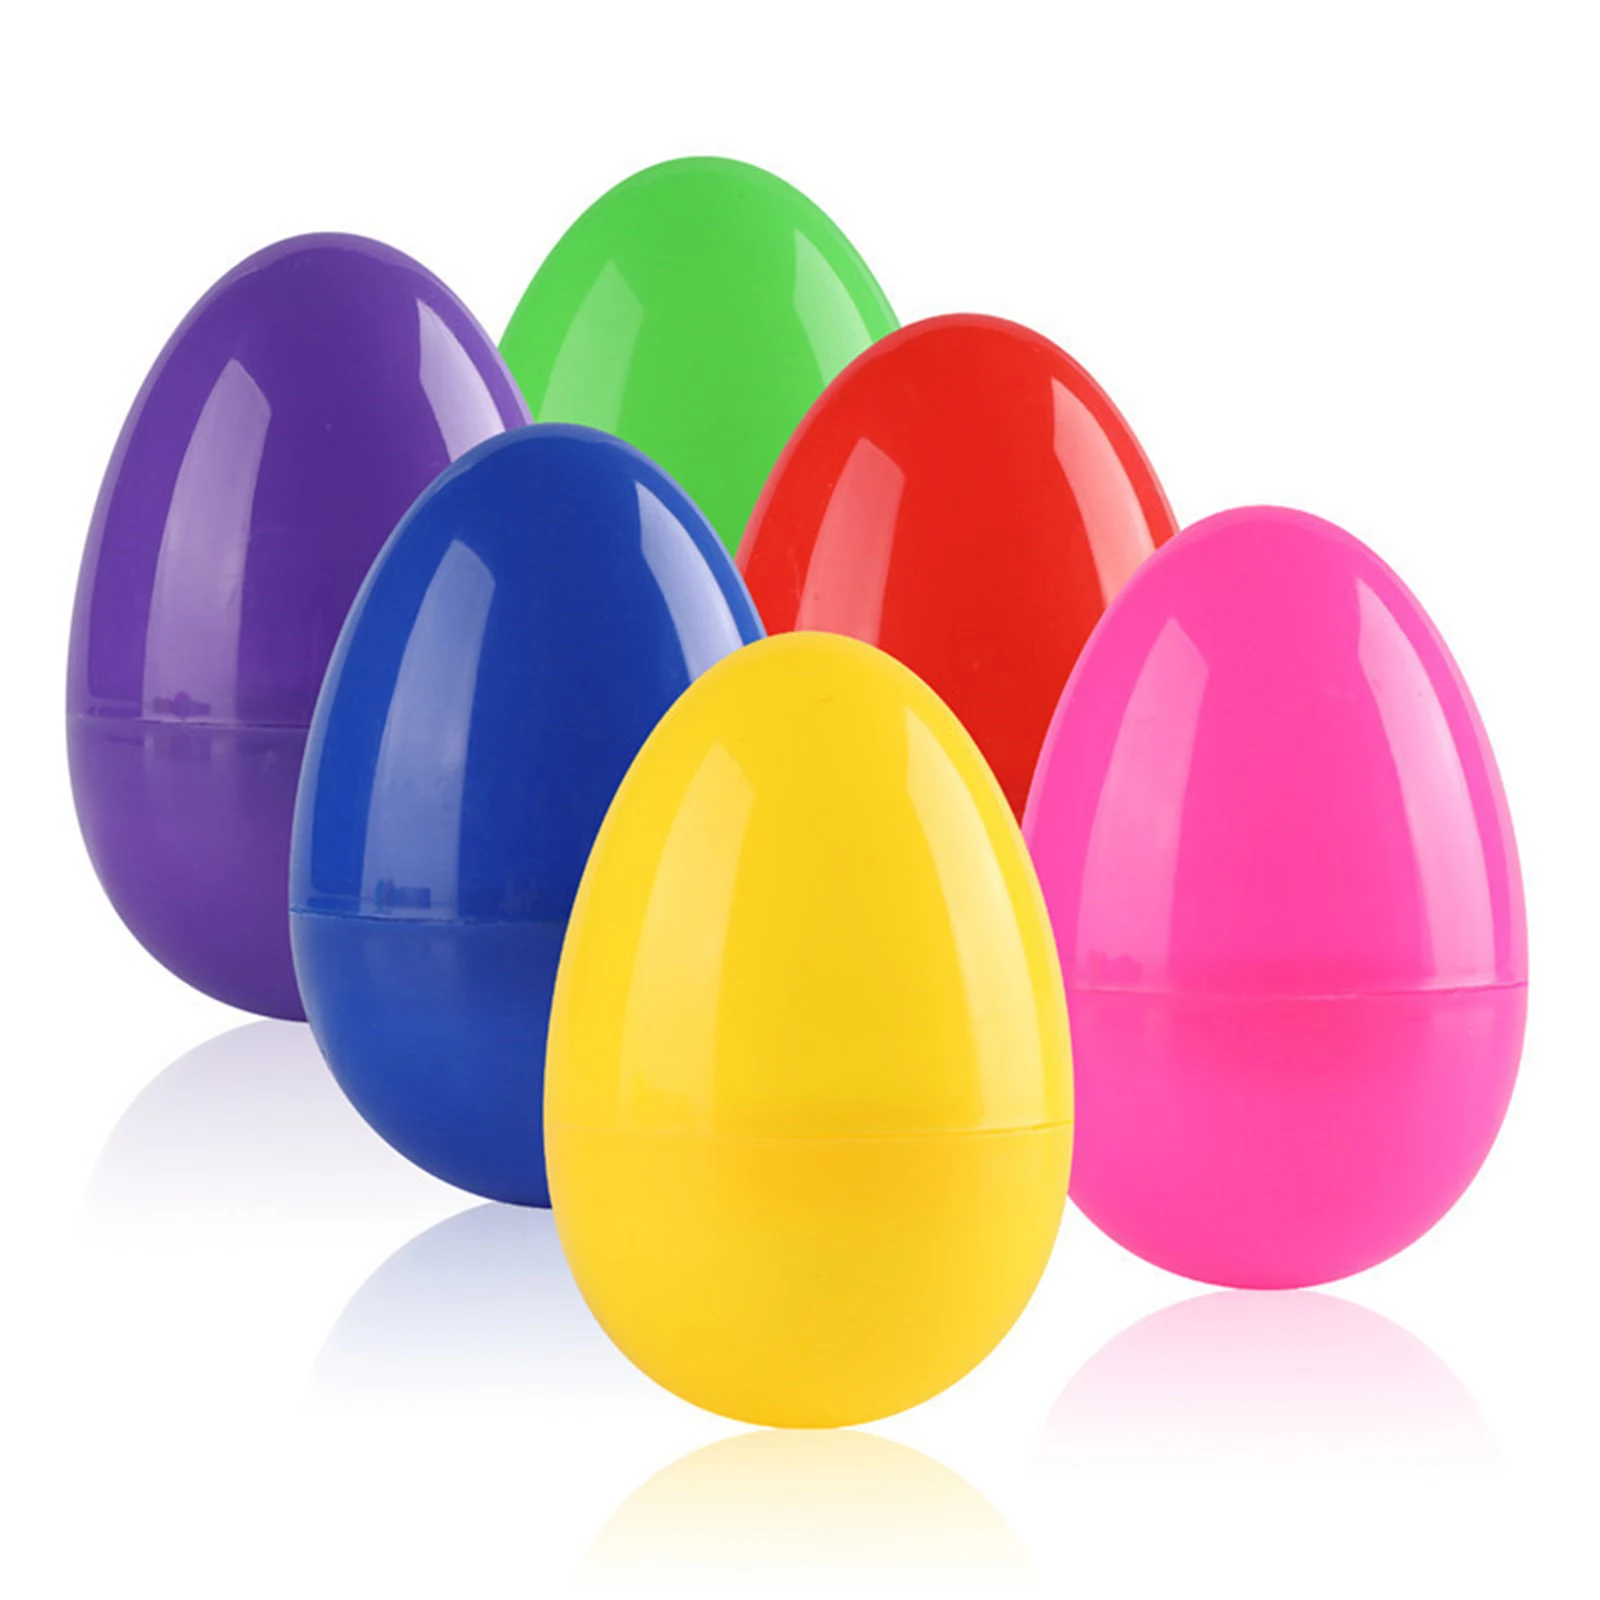 

12pcs Colorful Easter Eggs Children's Handmade Diy Plastic Egg Shell